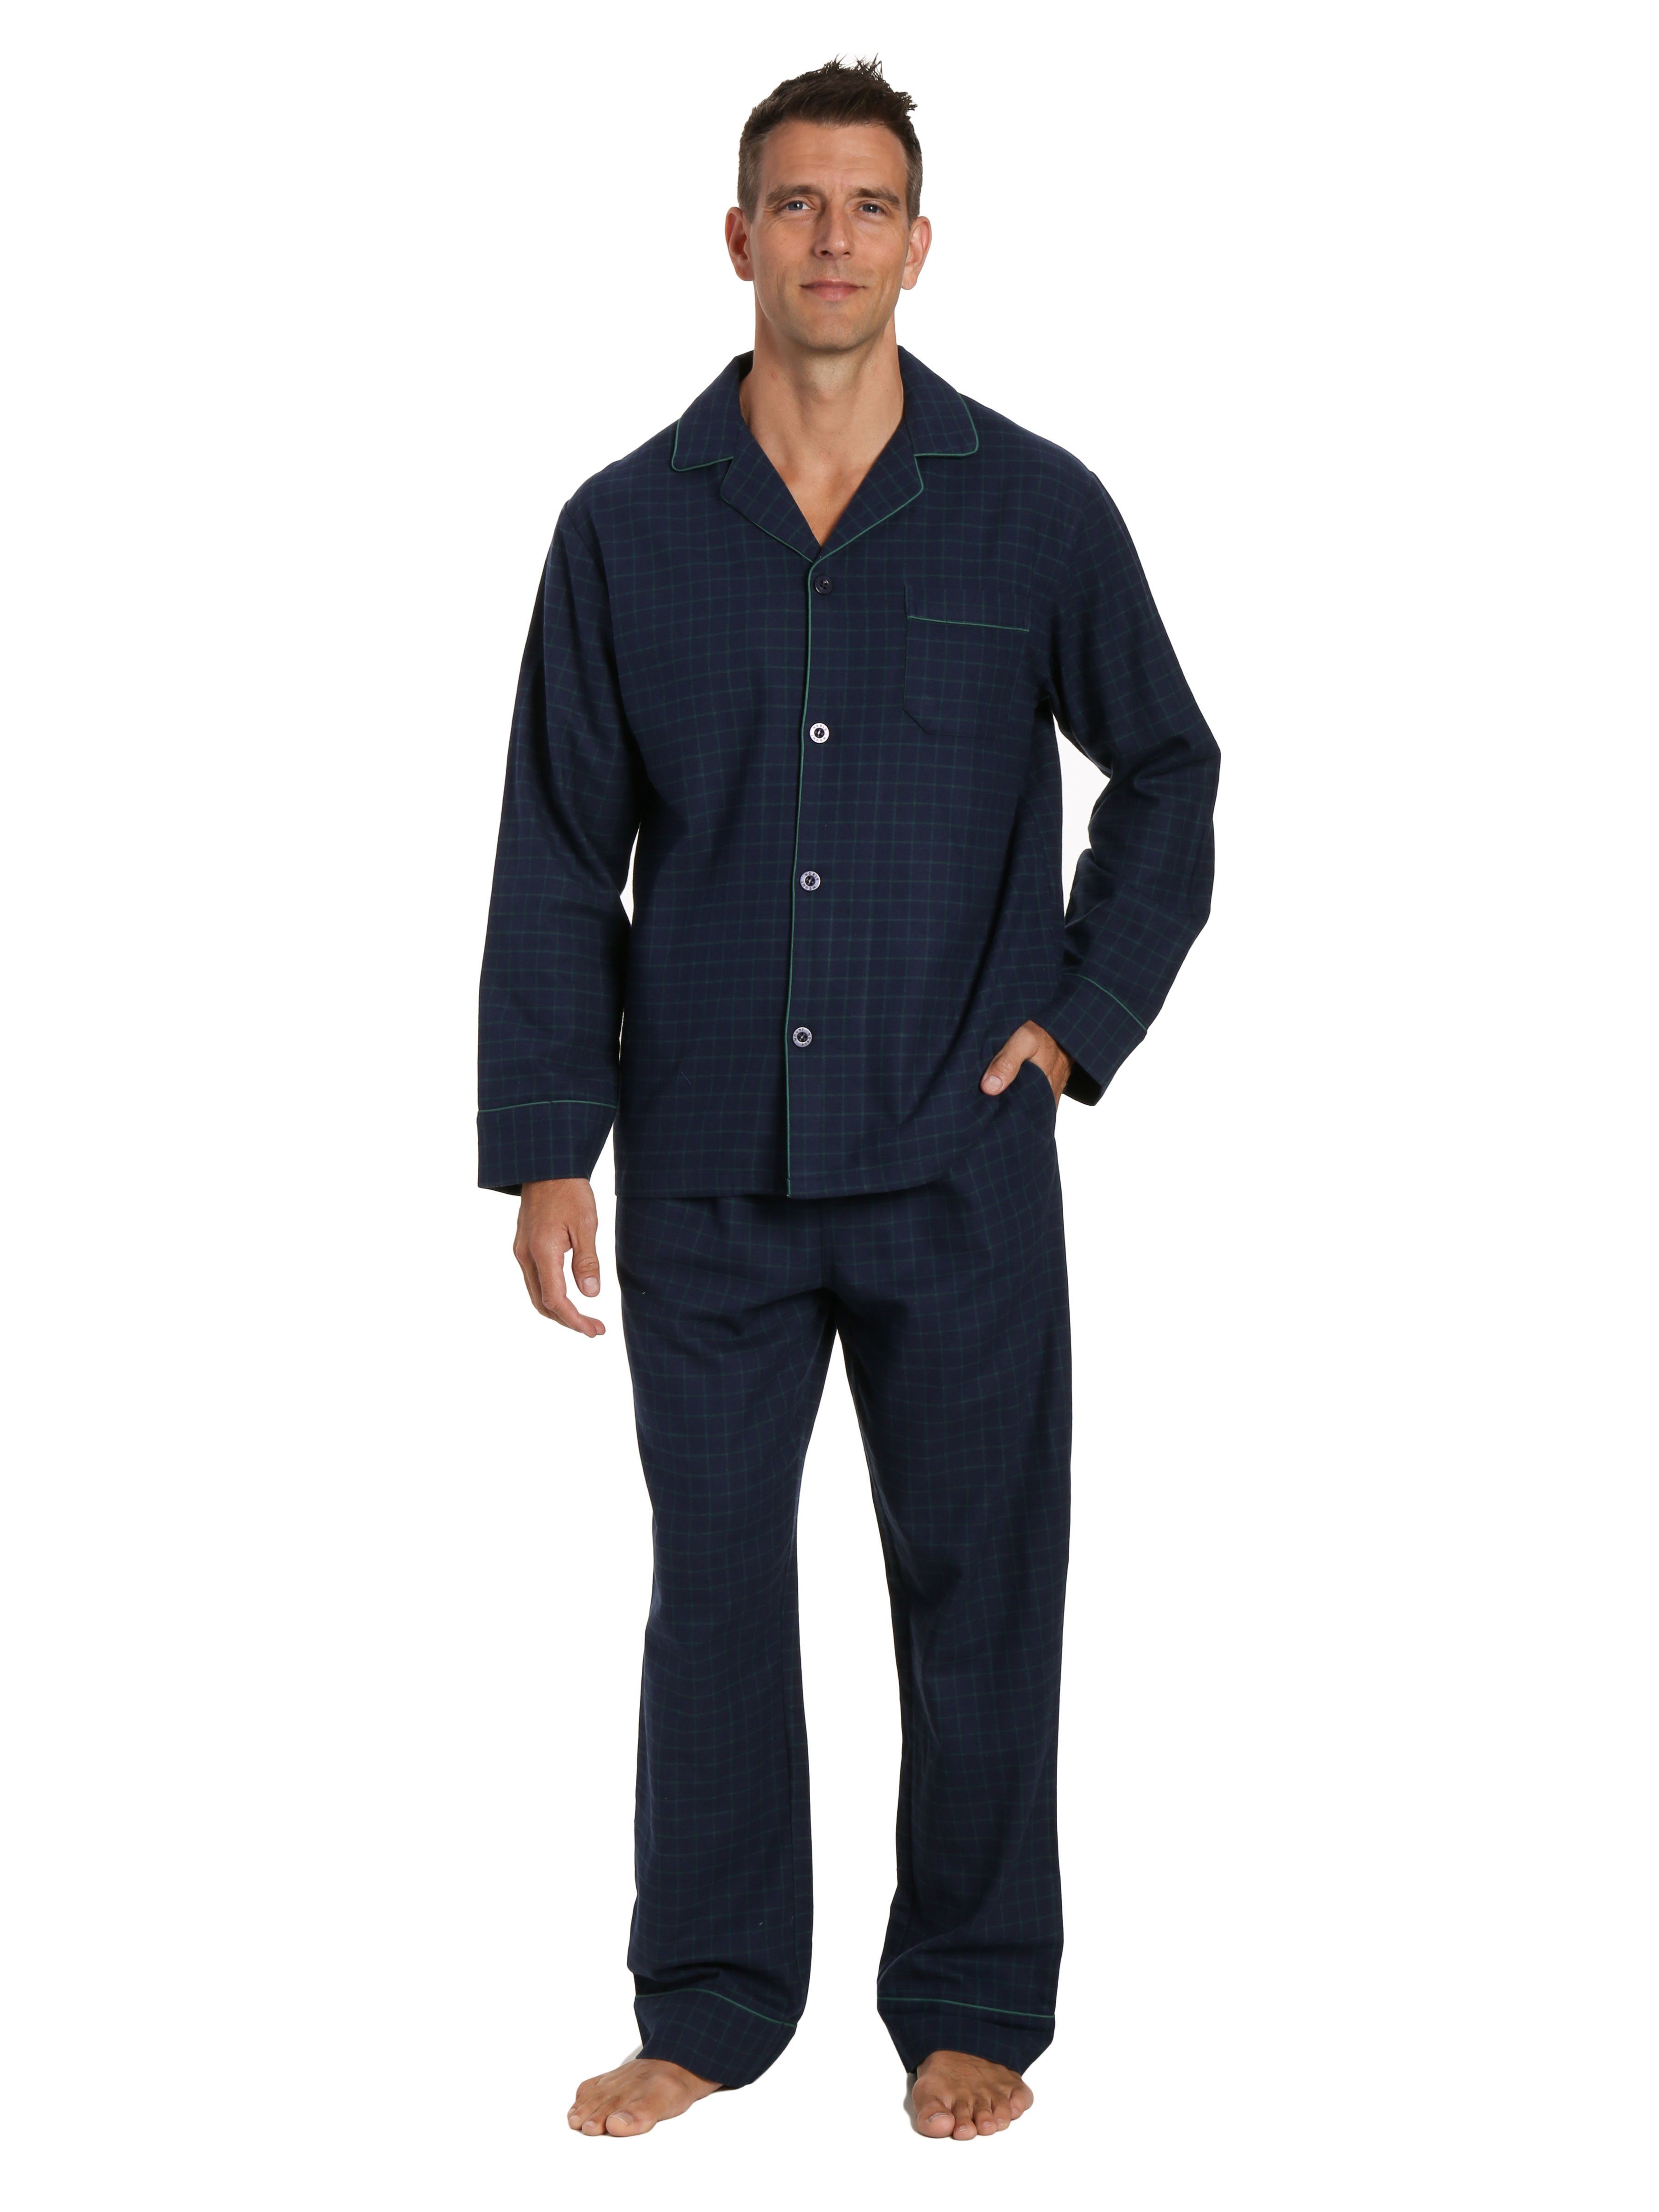 Men's Box Packaged Premium 100% Cotton Flannel Pajama Sleepwear Set ...